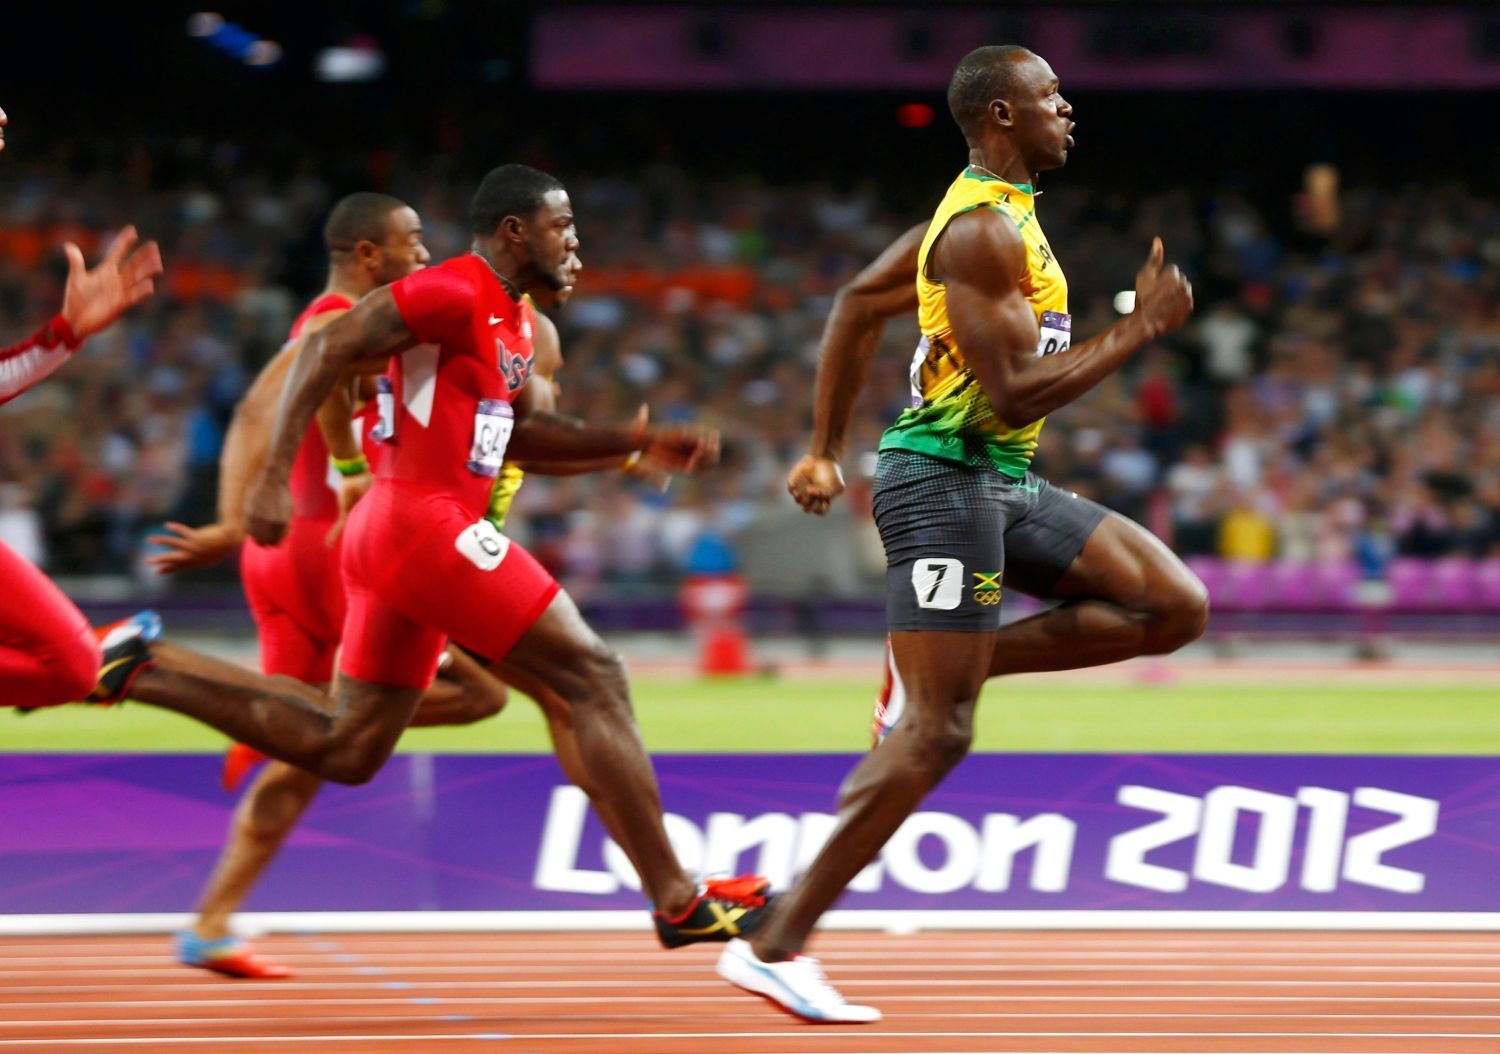 Jamajský sprinter Usain Bolt vítězí ve finále na 100 metrů během OH 2012 v Londýně před Yohanem Blakem a Justinem Gatlinem.